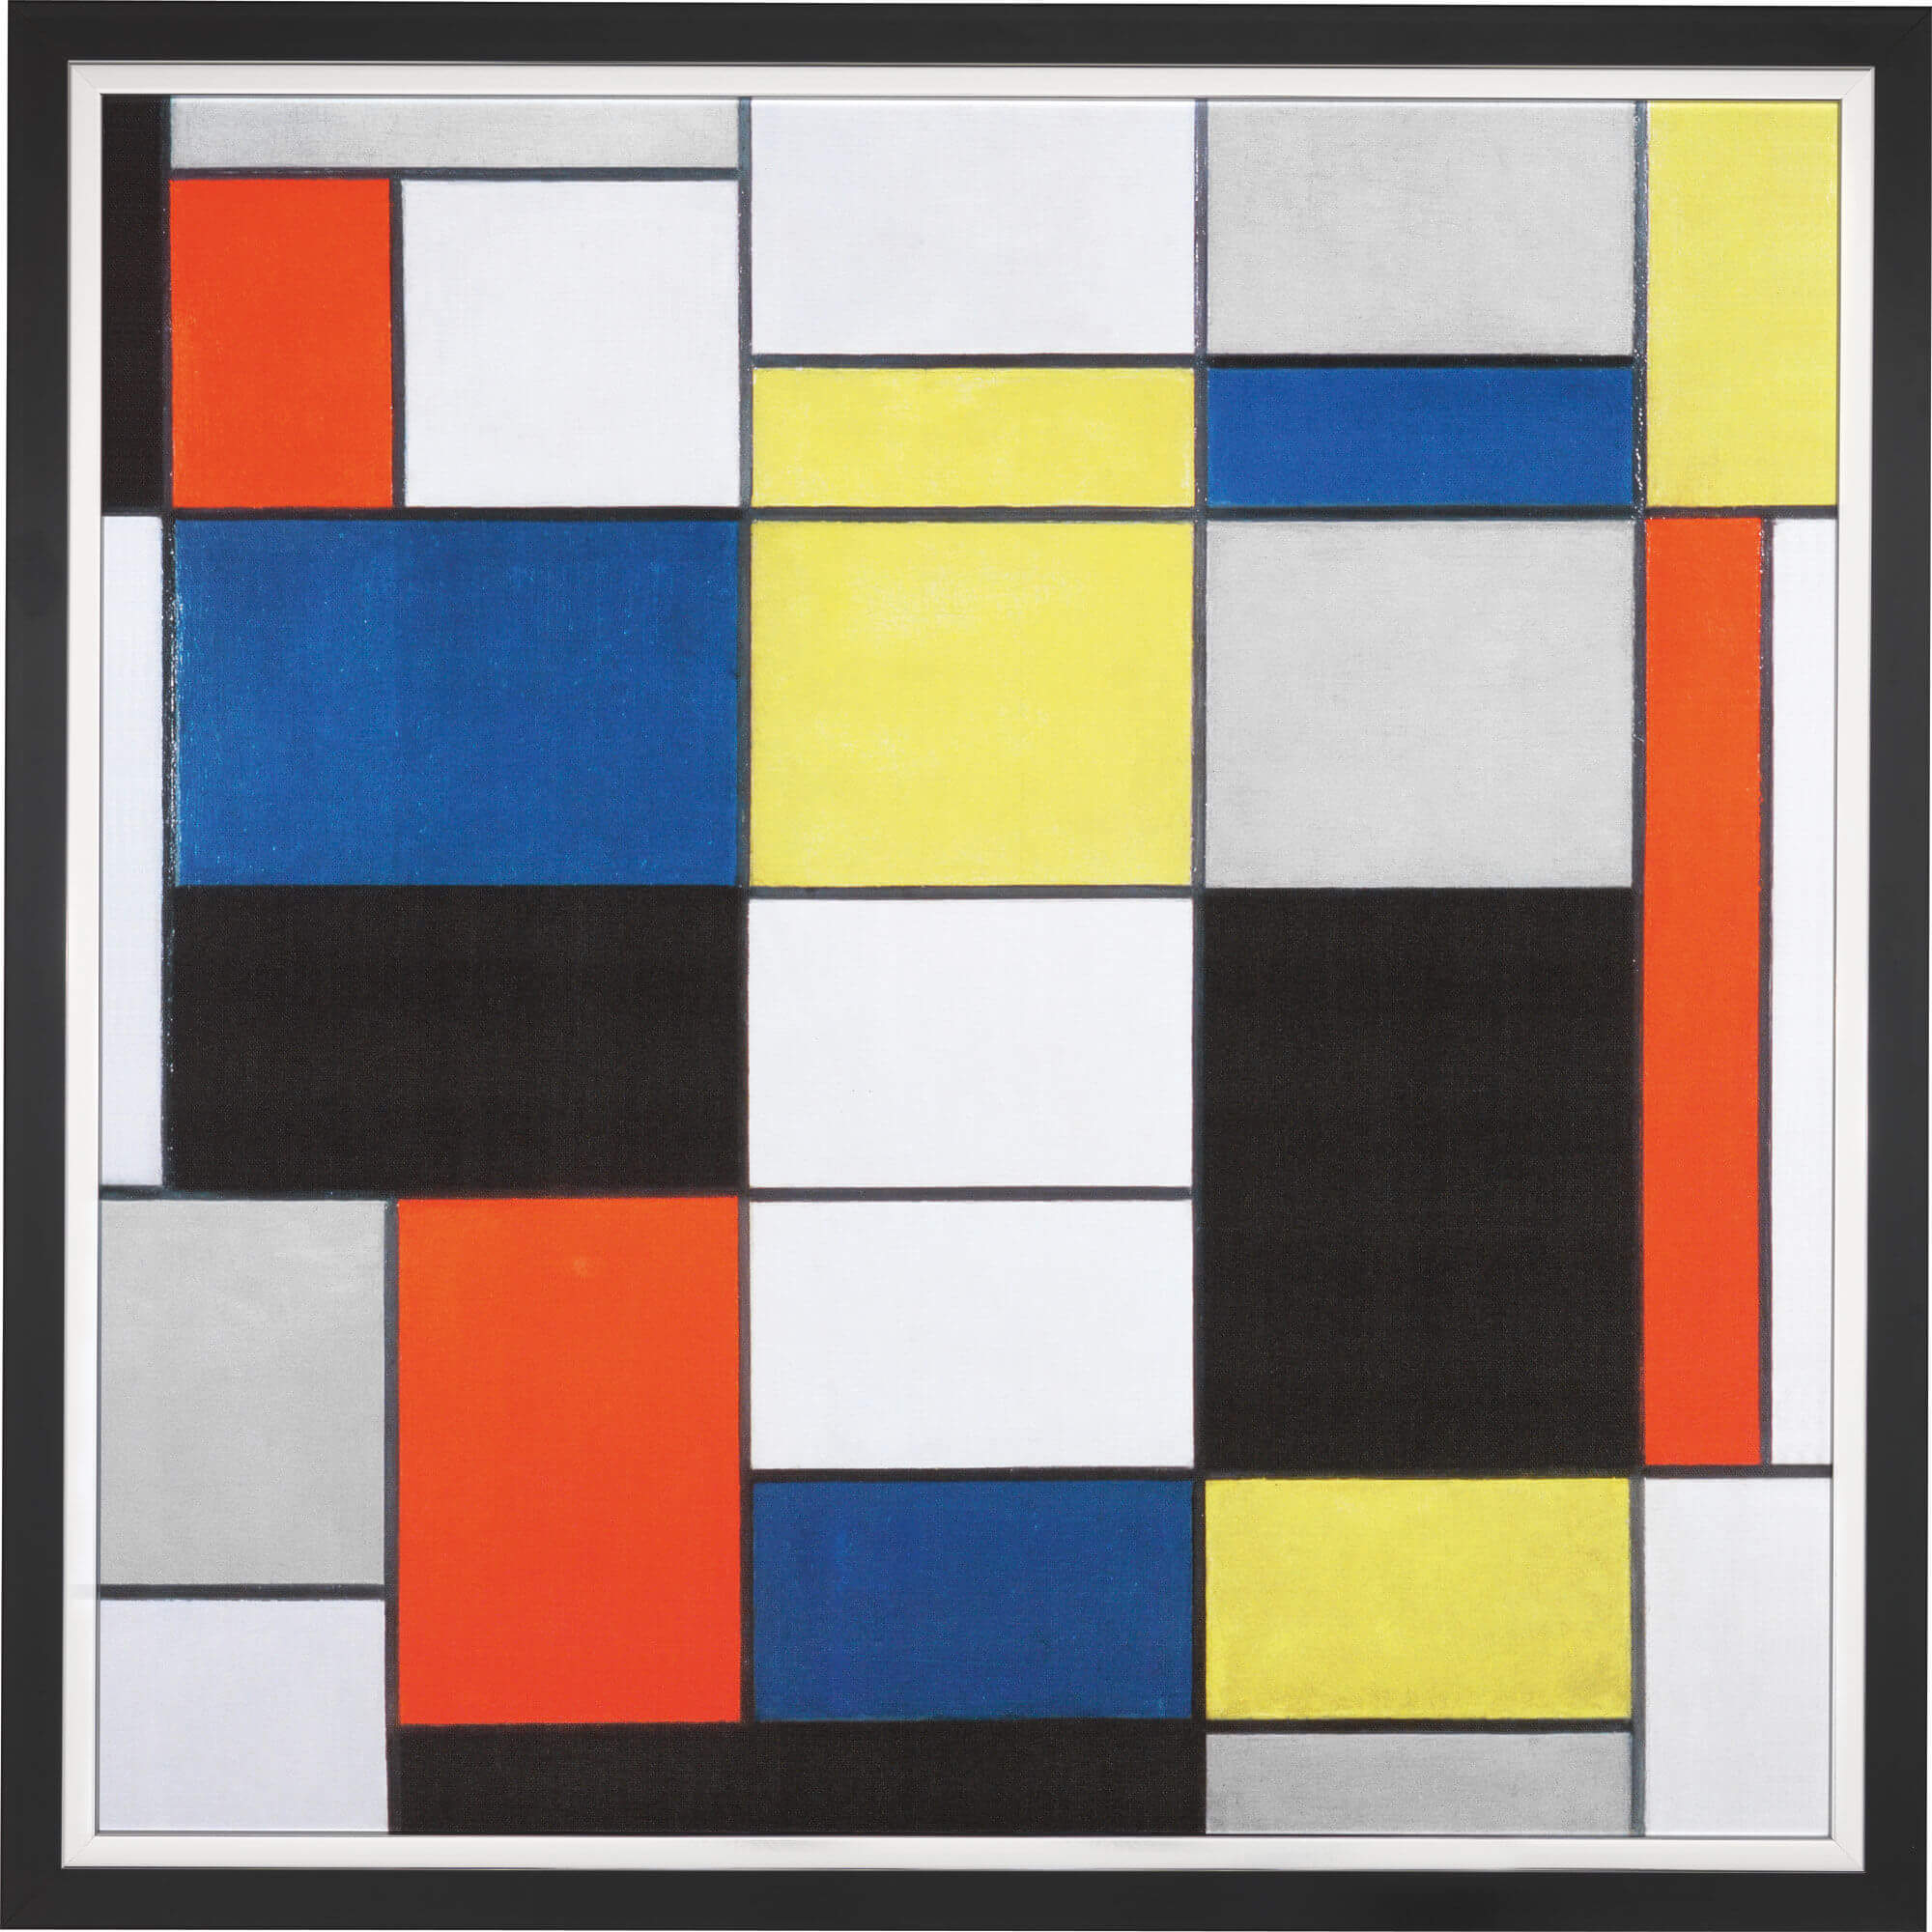 What is De Stilj Art De Stijl on full display in Mondrians work • De Stijl movement artists